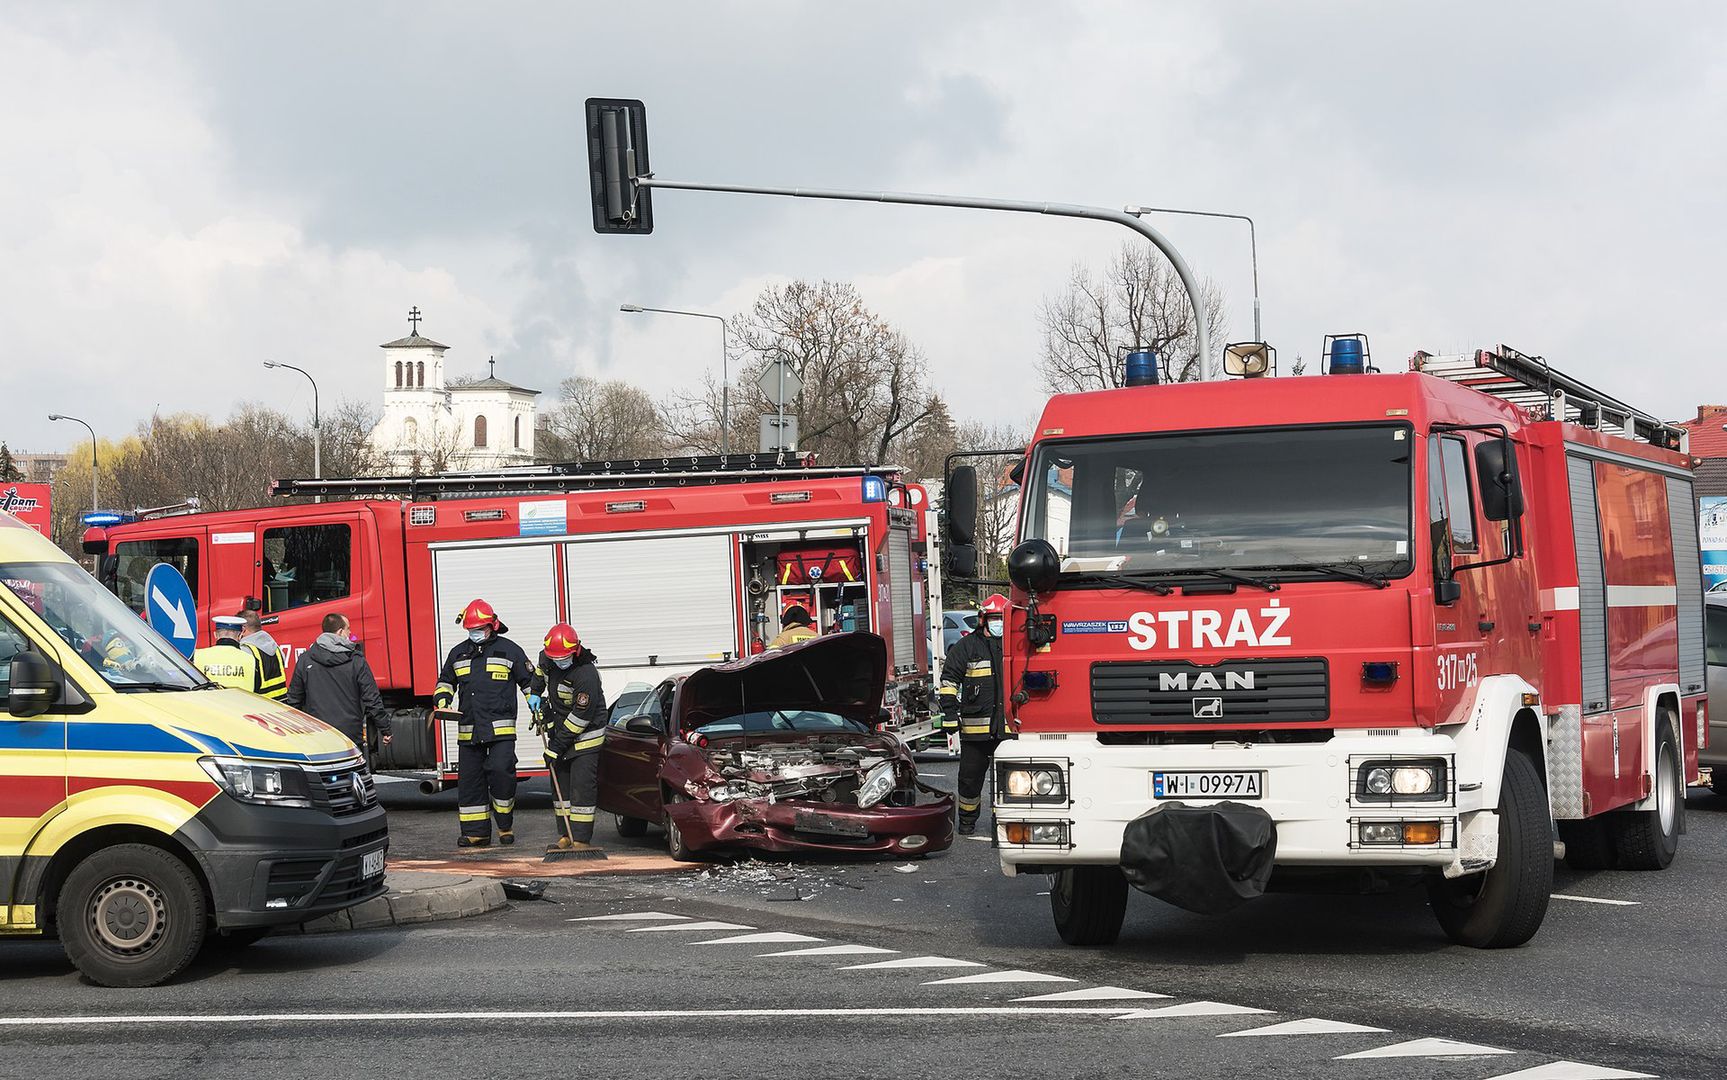 Koszmarny wypadek w Łodzi. Mężczyzna zmiażdżony przez dwa pojazdy